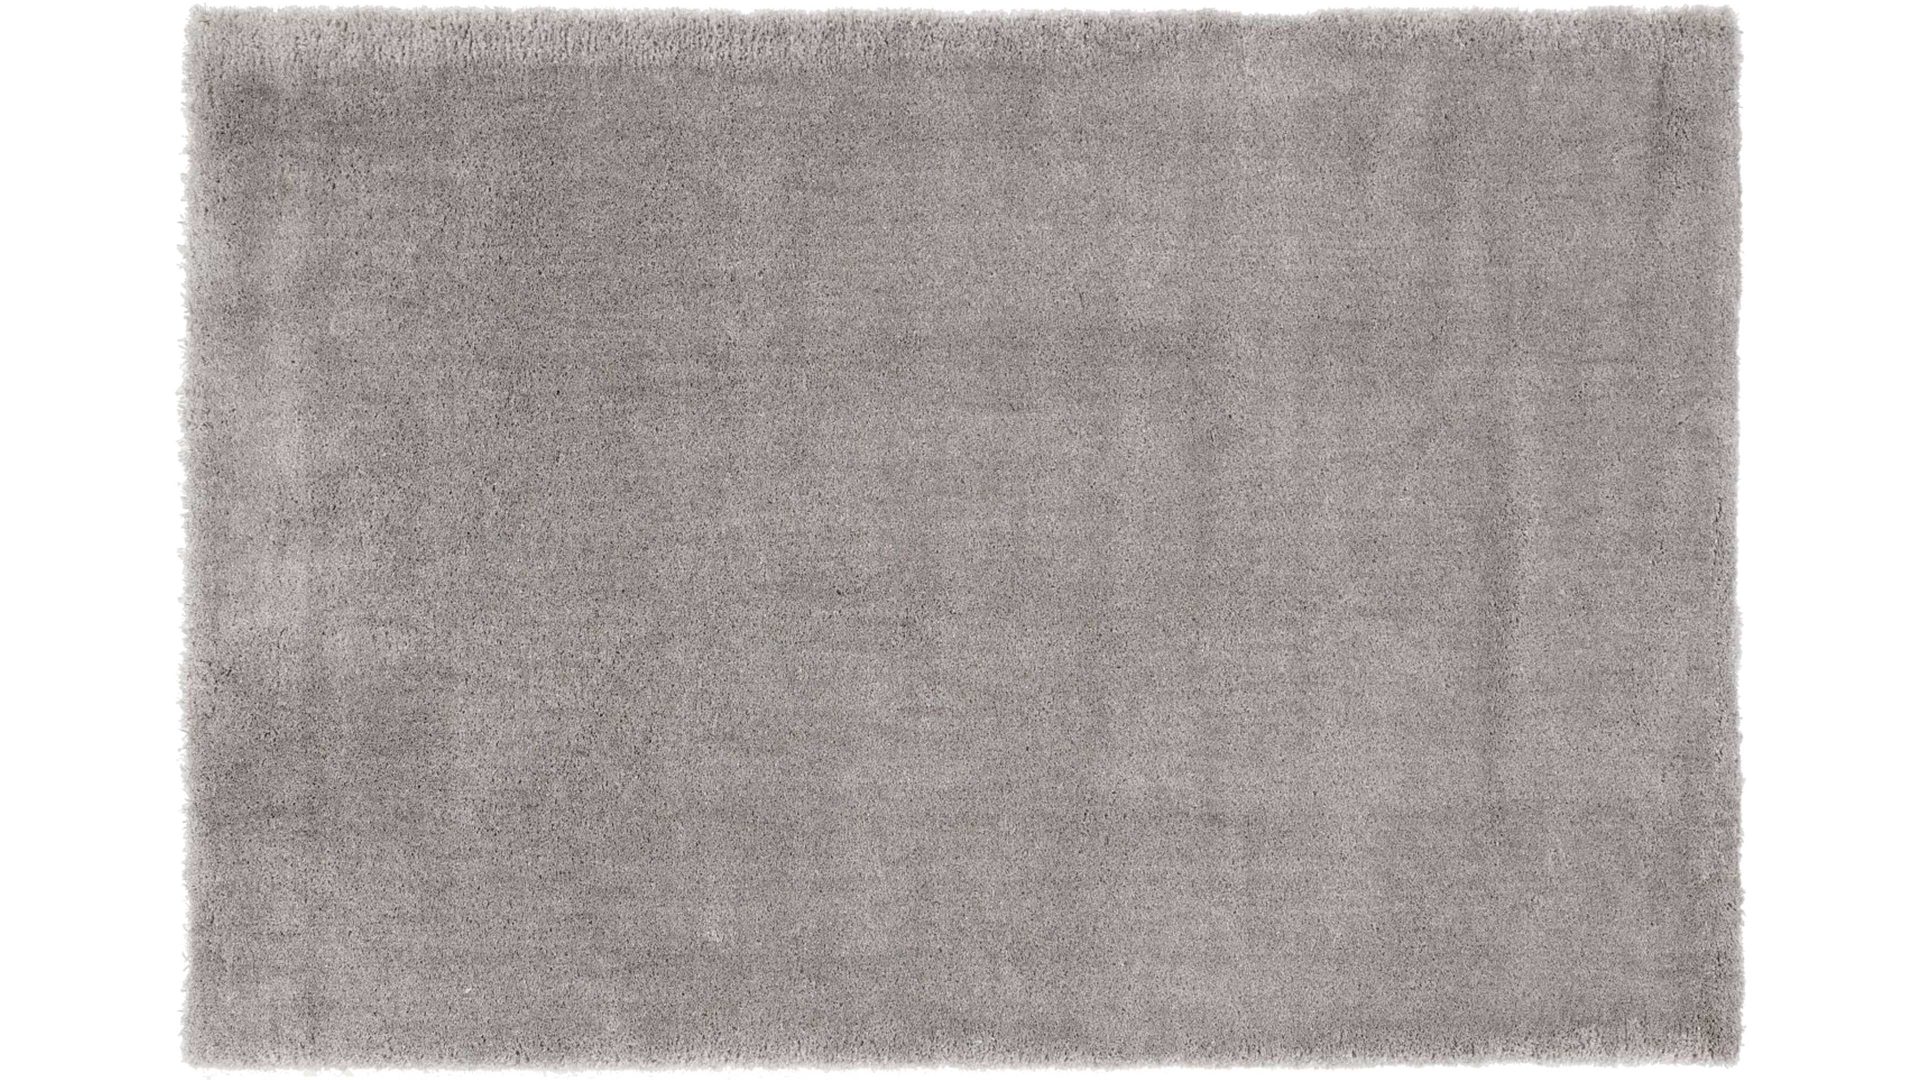 Shaggyteppich Oci aus Kunstfaser in Grau Shaggyteppich Royal Shaggy für Ihre Wohnaccessoires graue Kunstfaser – ca. 160 x 230 cm